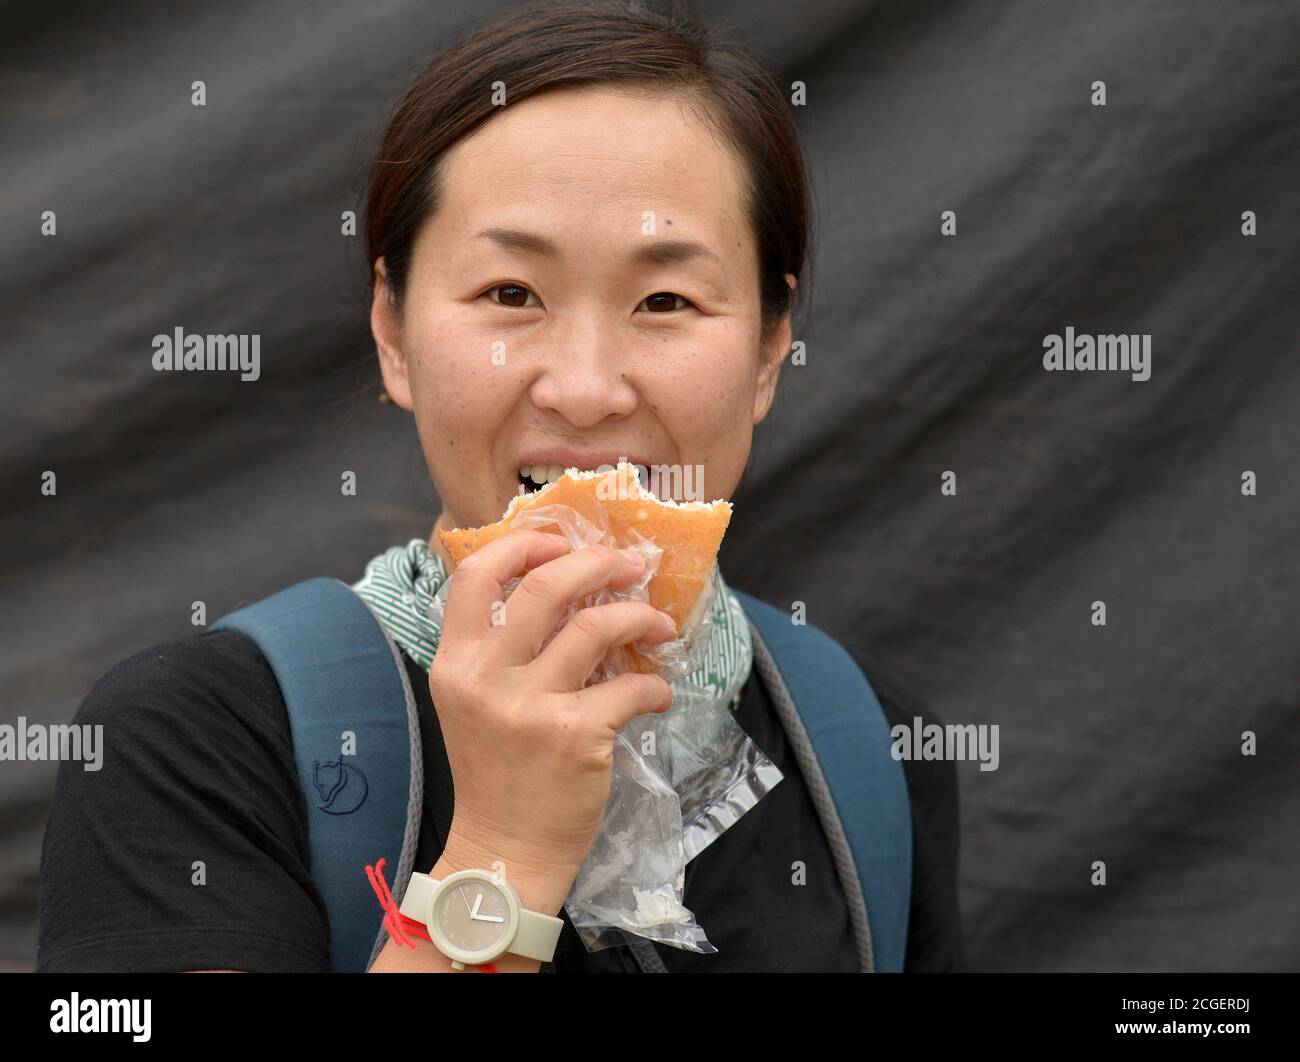 Une touriste japonaise mange un pain et regarde la caméra. Banque D'Images